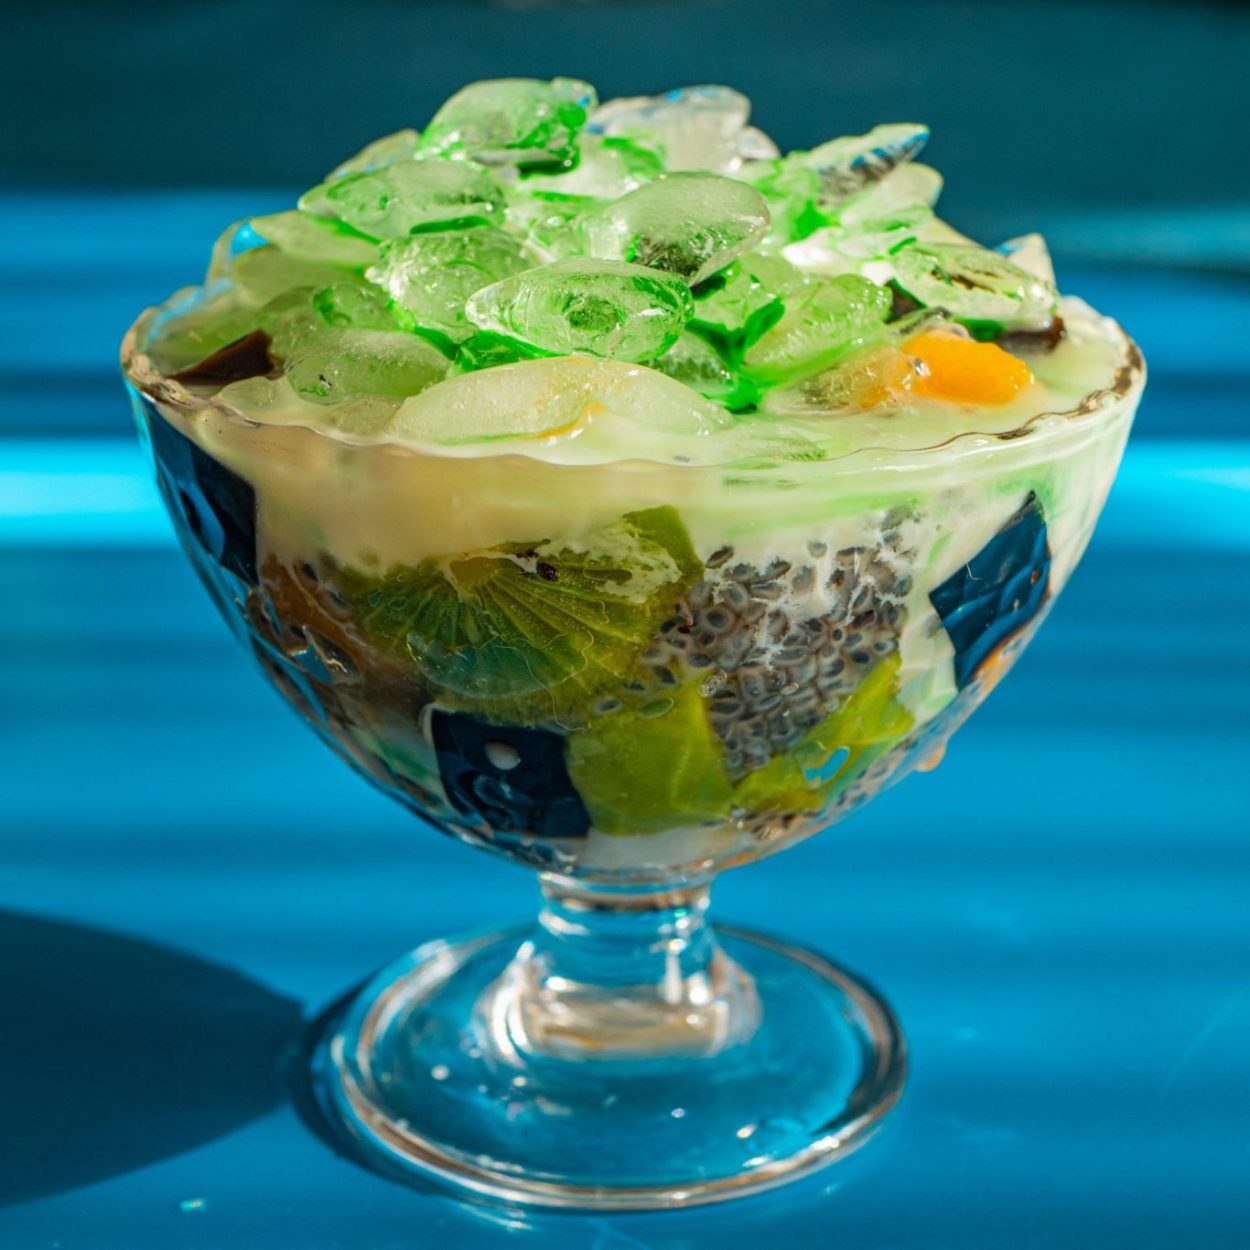 Es campur - Salade de fruits à la glace pilée et au lait concentré - Recette indonésienne